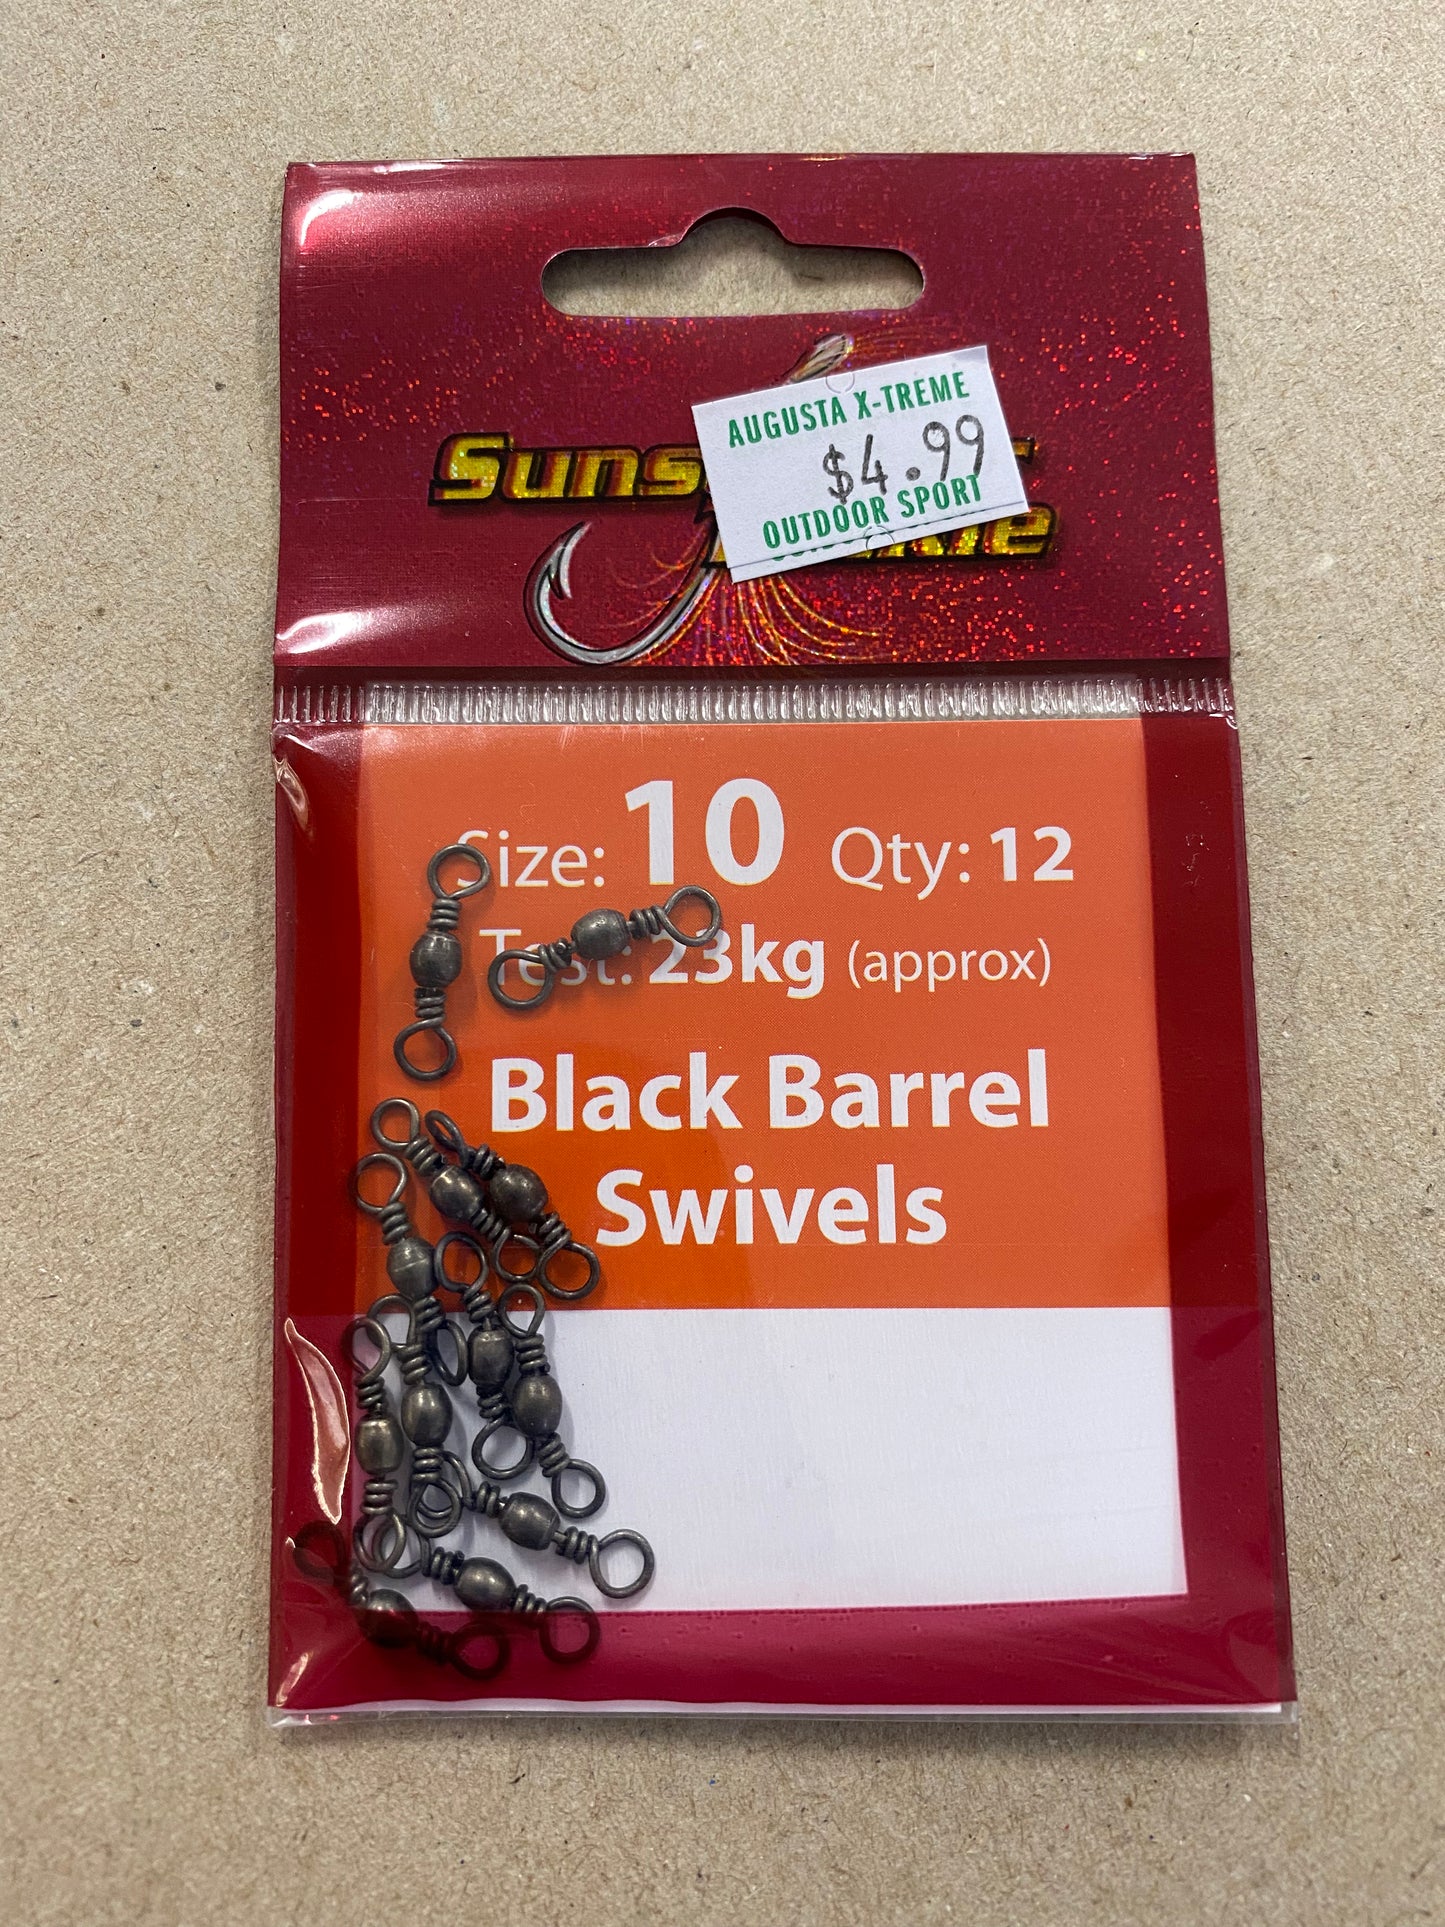 Sunseeker Swivel Black Barrel Size 1 Qty 12